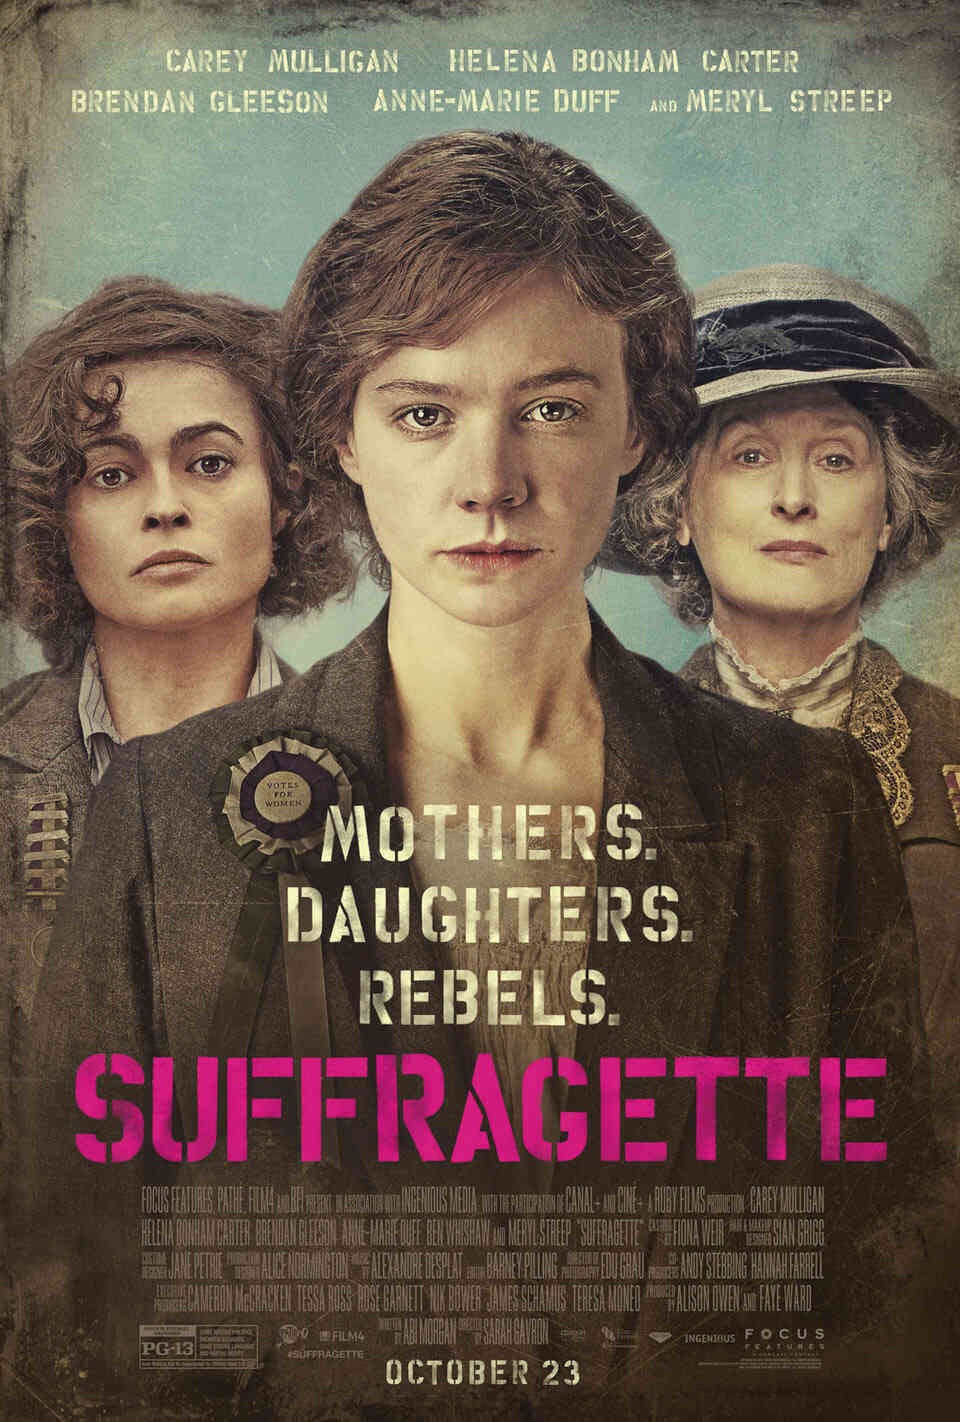 Read Suffragette screenplay.